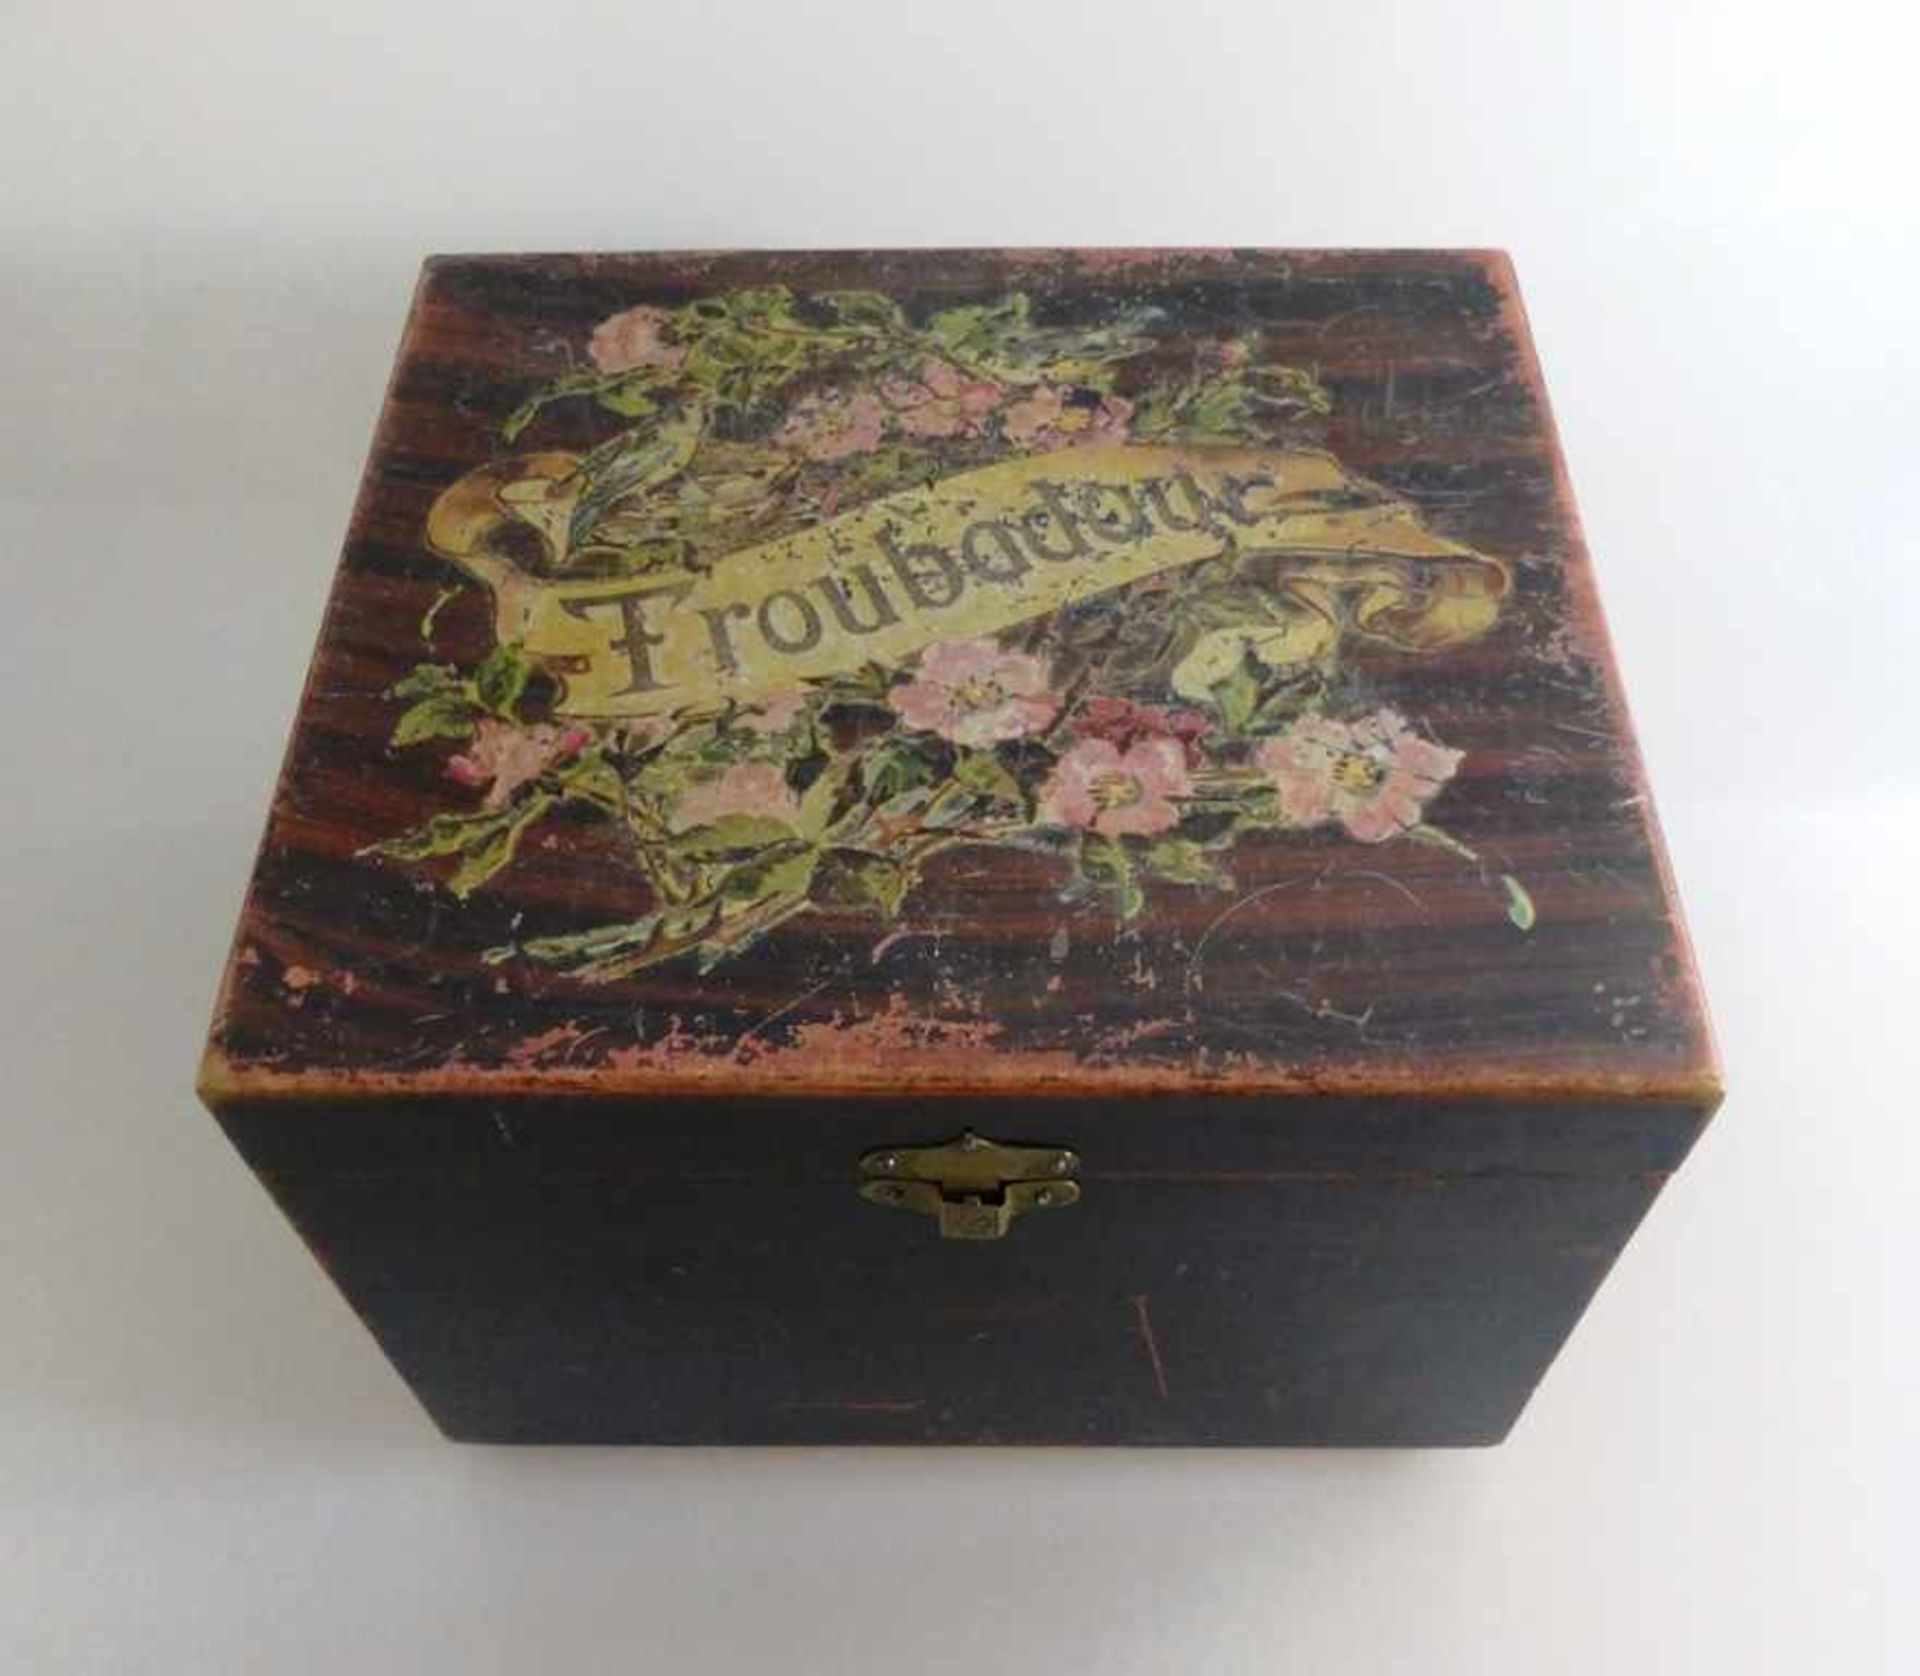 Polyphon um 1900, Holzgehäuse mit funktionierendem Spielwerk, auf dem Deckel bez. "Troubadour",